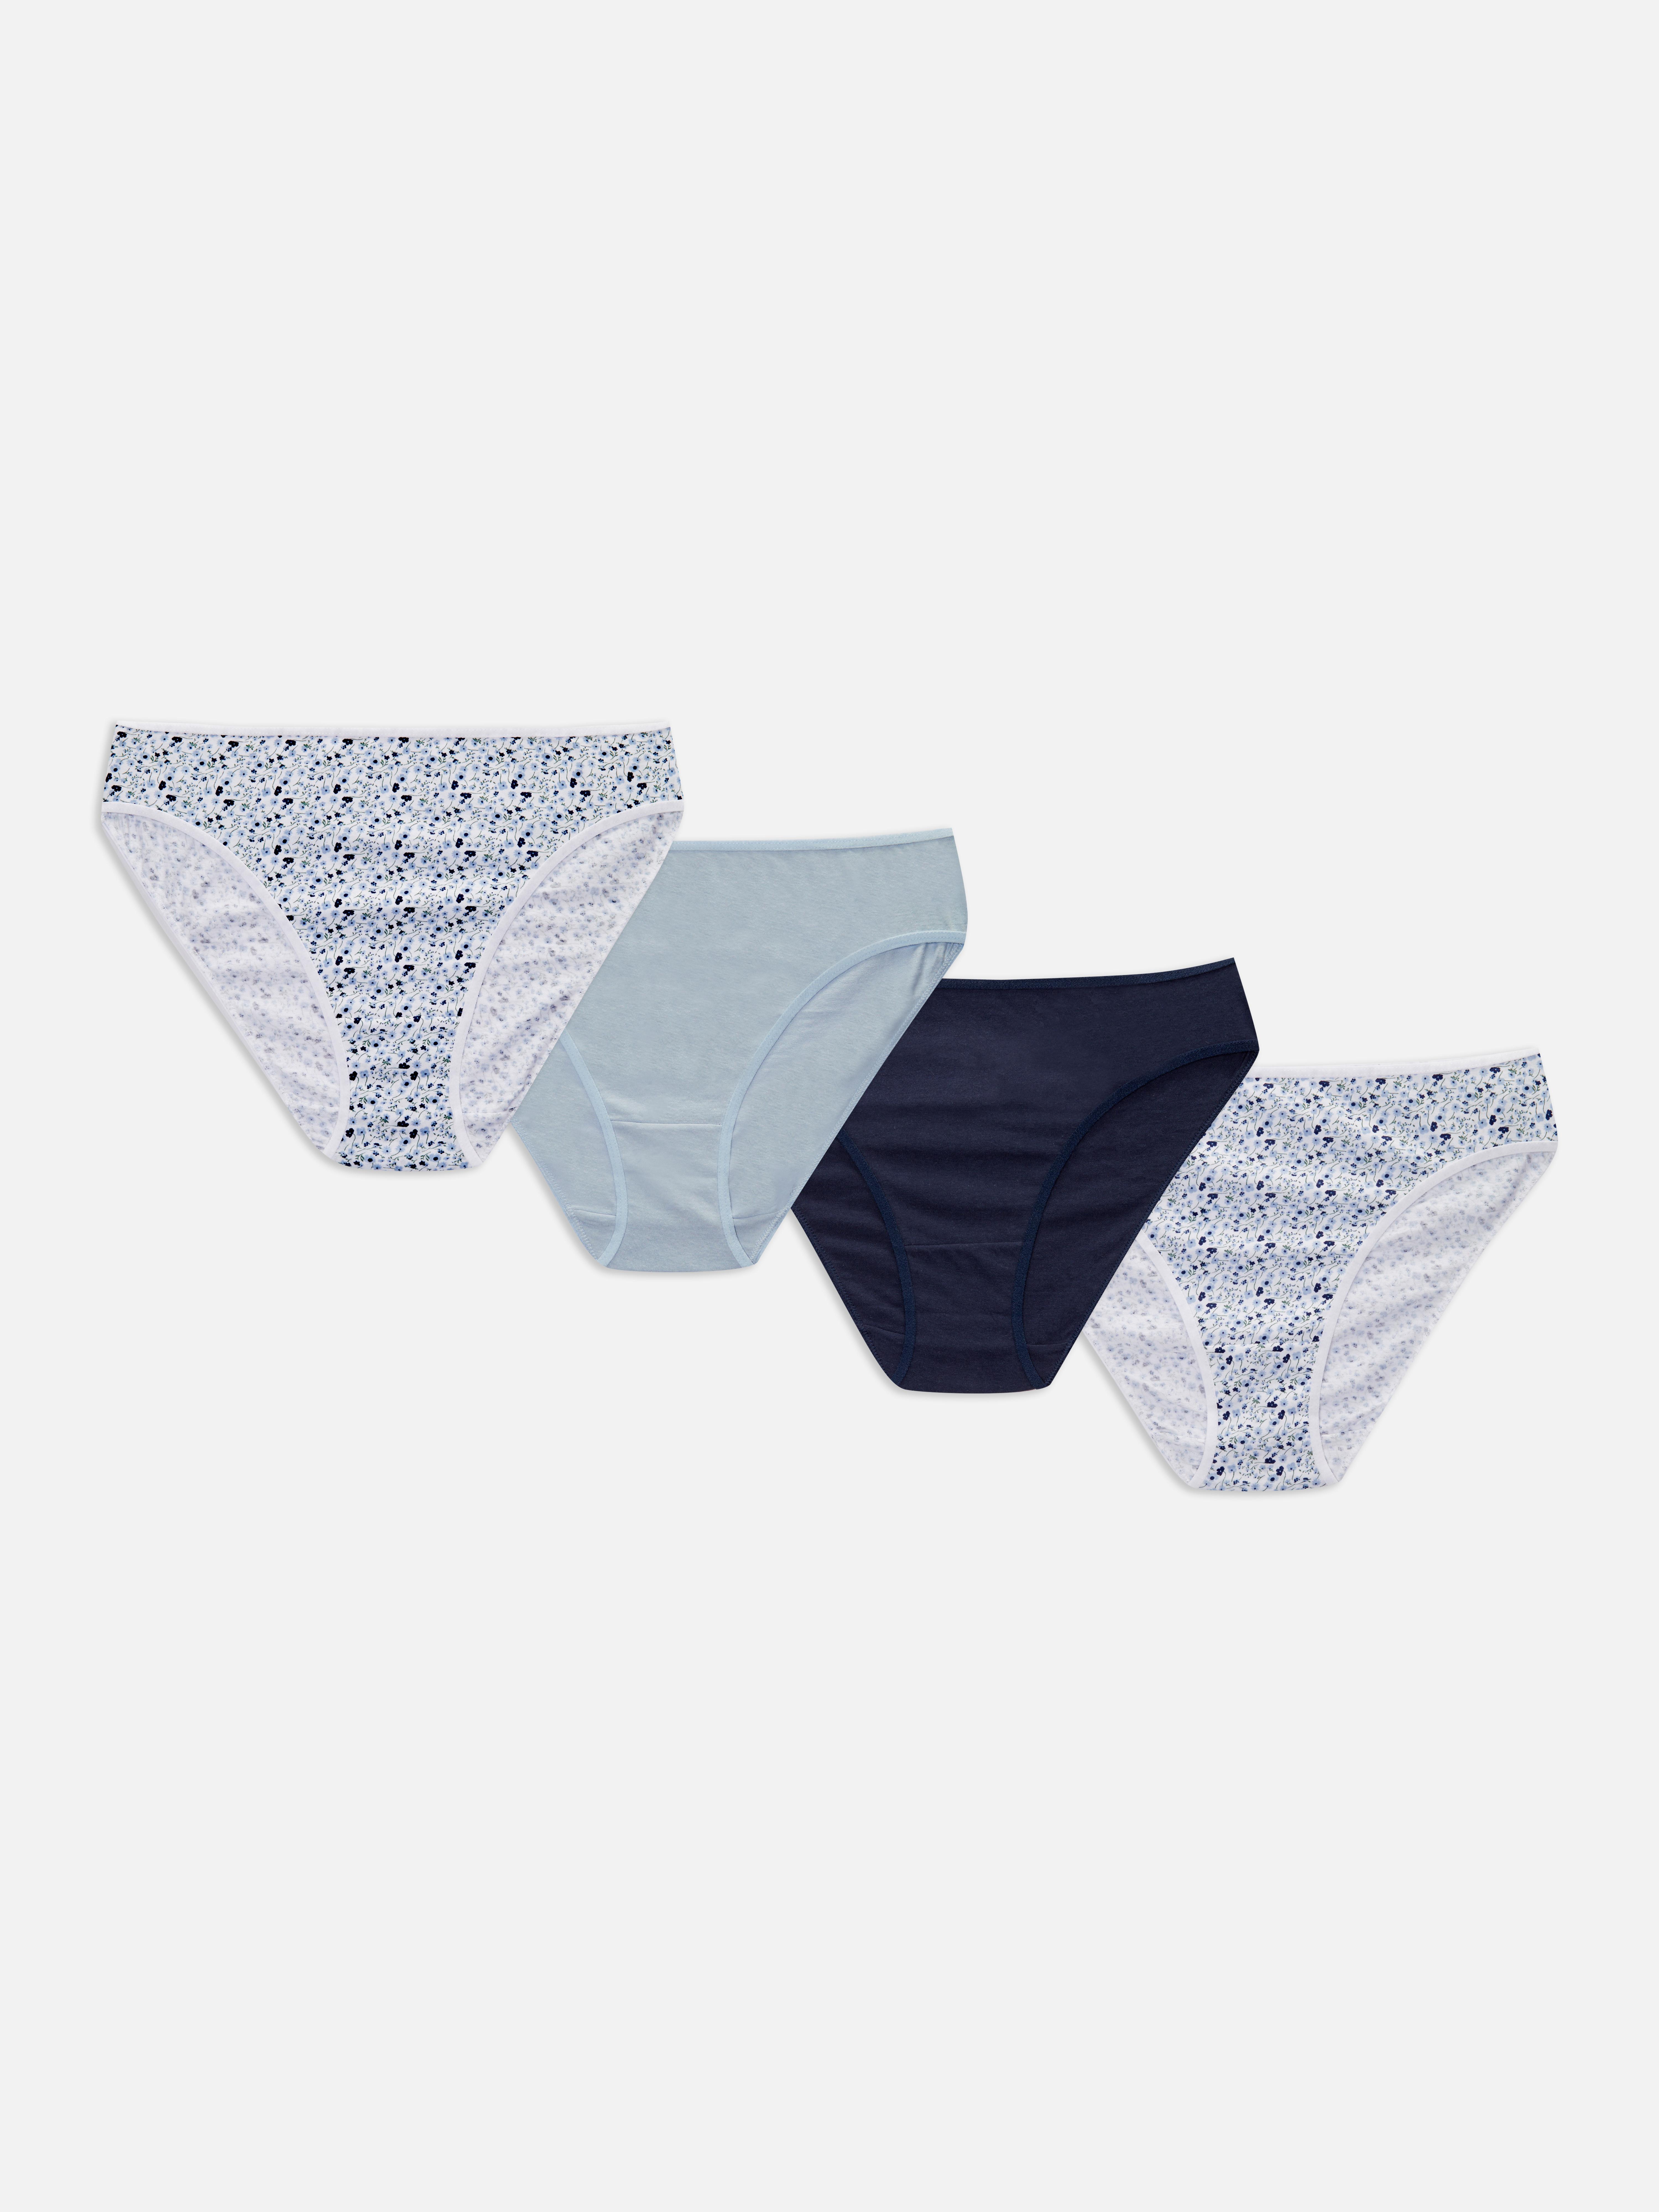 Geboorte geven produceren James Dyson Bikinibroekjes met gemengde print, set van 4 | Onderbroeken & slips |  Lingerie & ondergoed | Dameskleding | Onze modecollectie voor dames | Alle  Primark-producten | Primark Nederlands